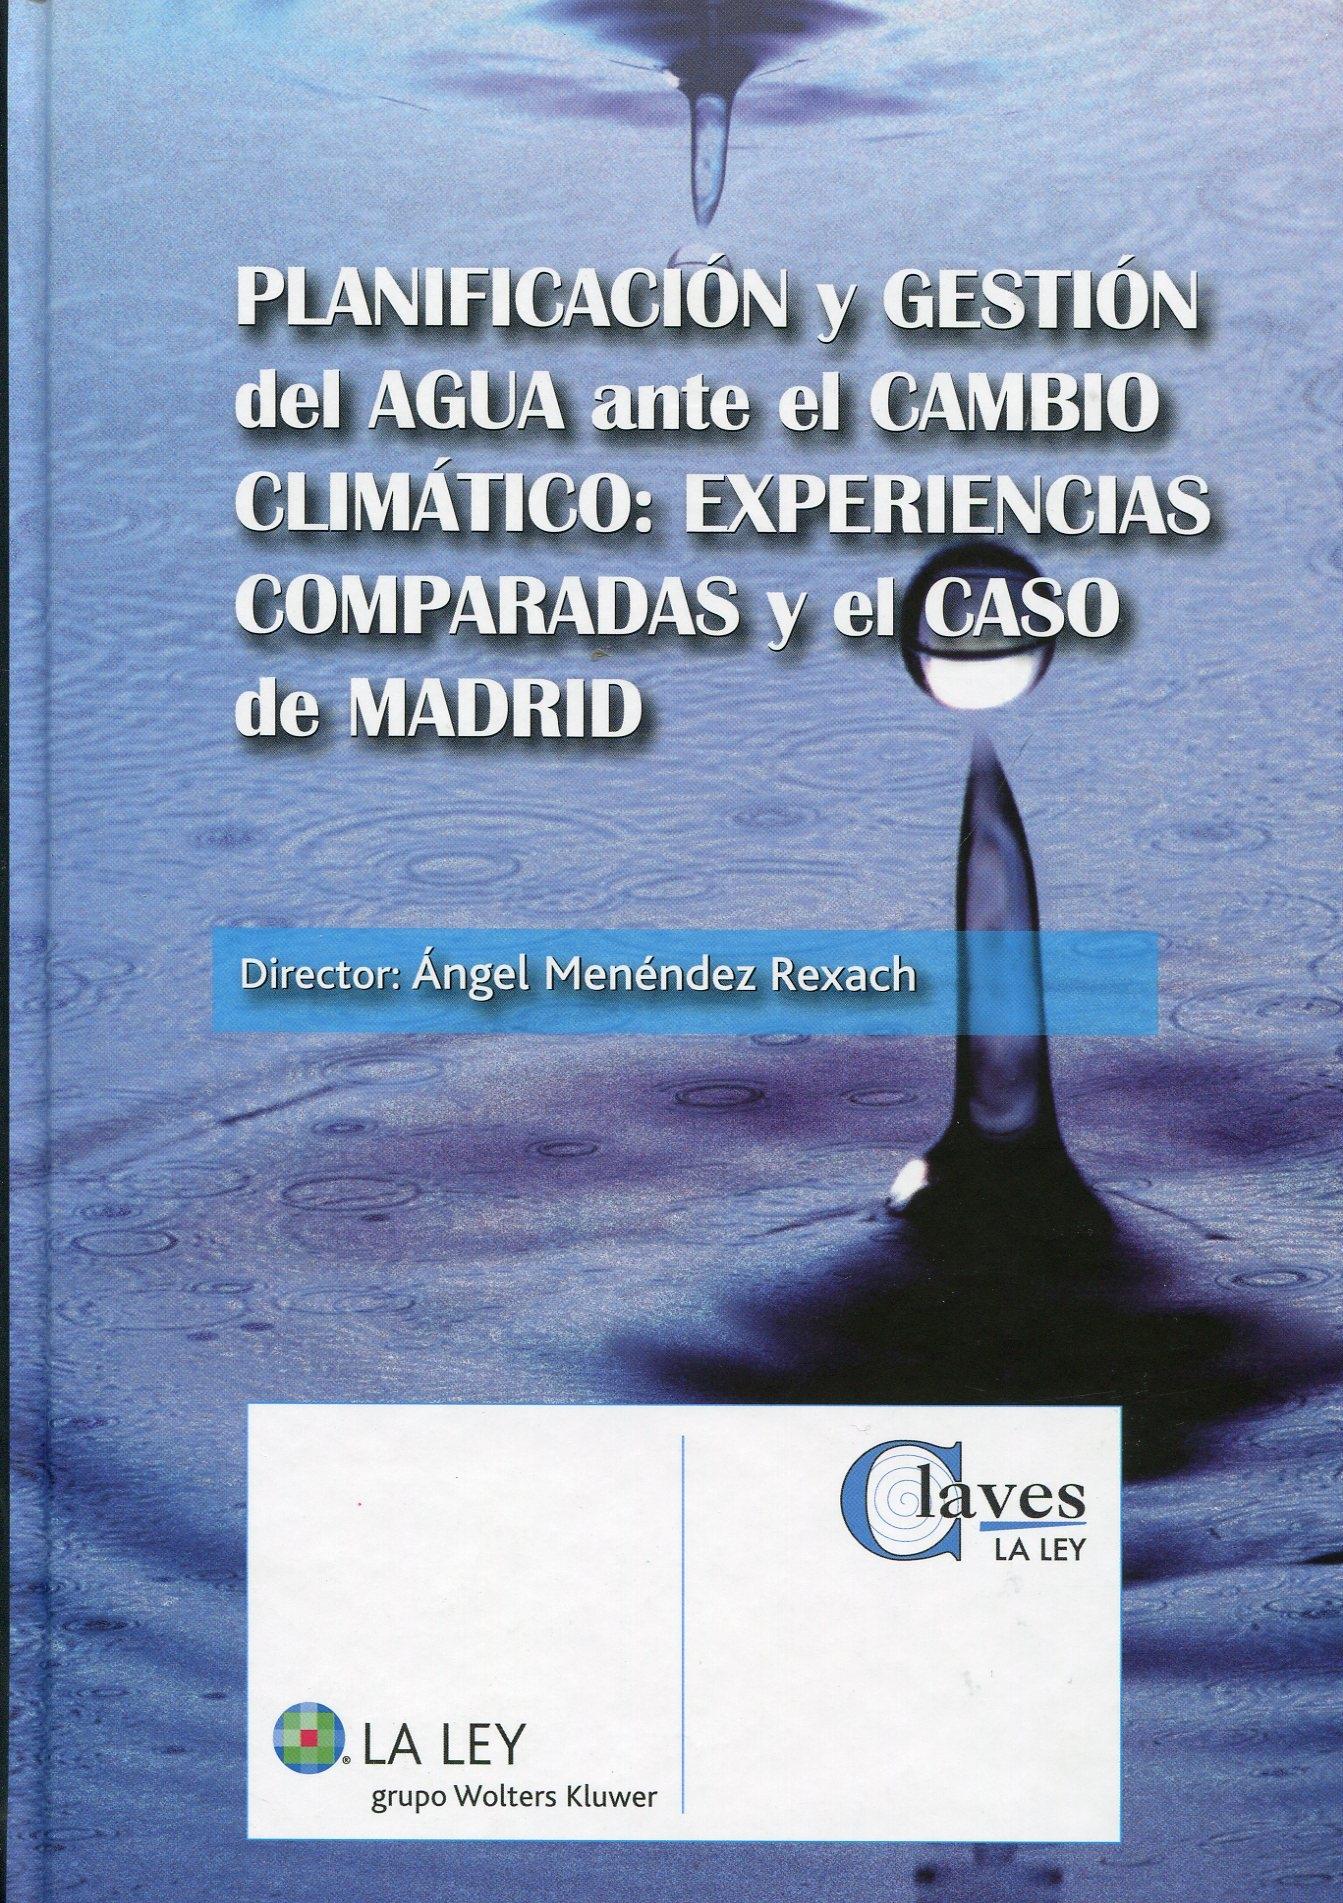 Planificación y gestión del agua ante el cambio climático "Experiencias comparadas y el caso de Madrid"